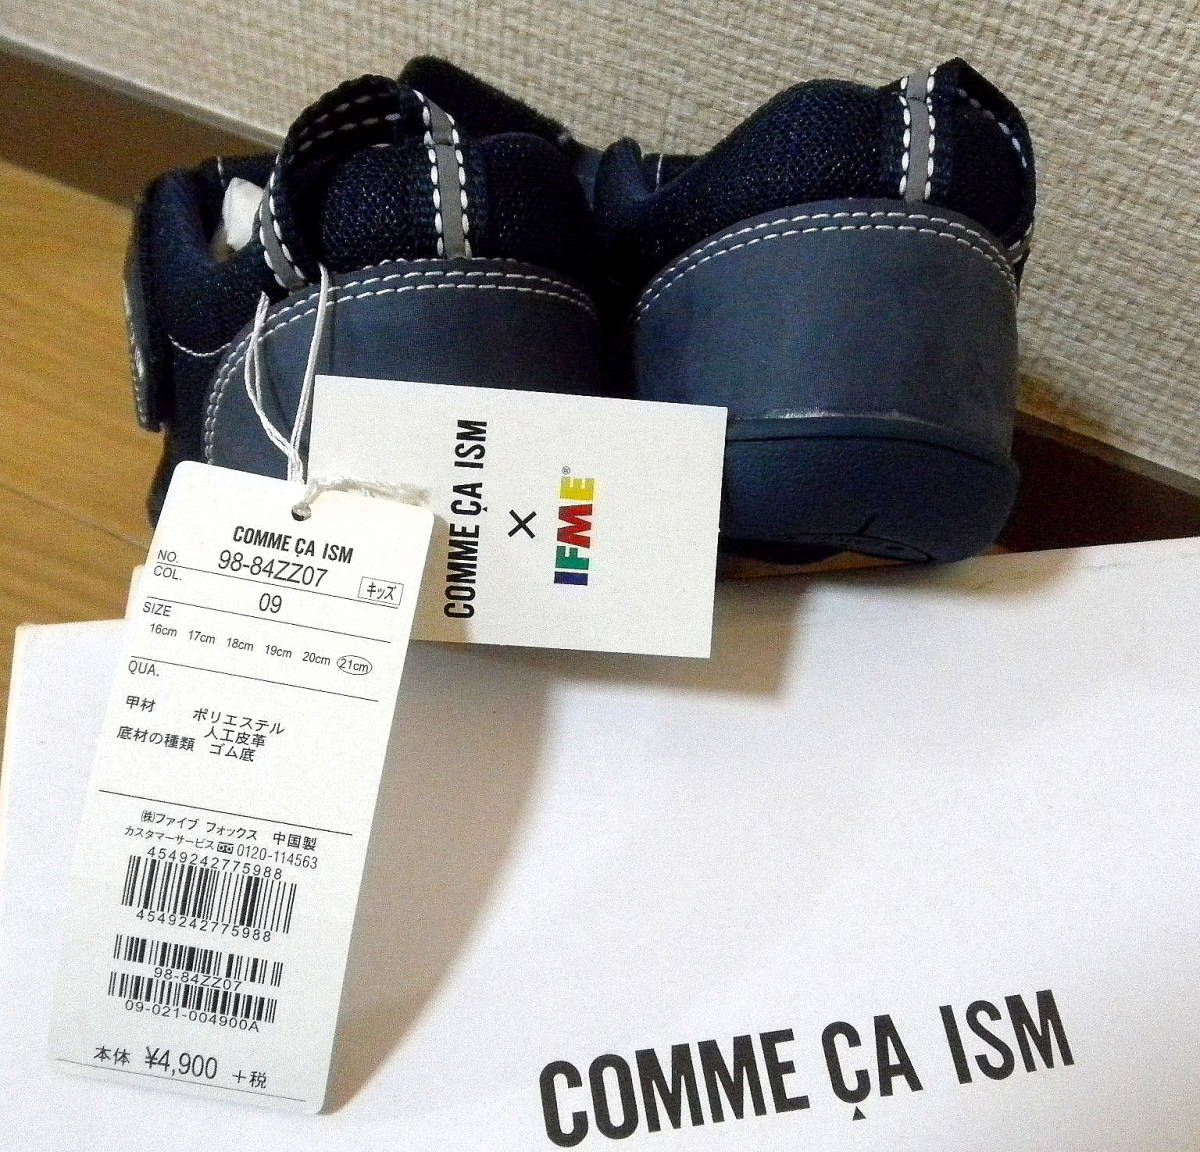  новый товар 21cm обычная цена 4900ifmi- Comme Ca IFME сотрудничество summer спортивные туфли текстильная застёжка темно синий весна лето specification вода суша обе для море бассейн кемпинг не использовался 